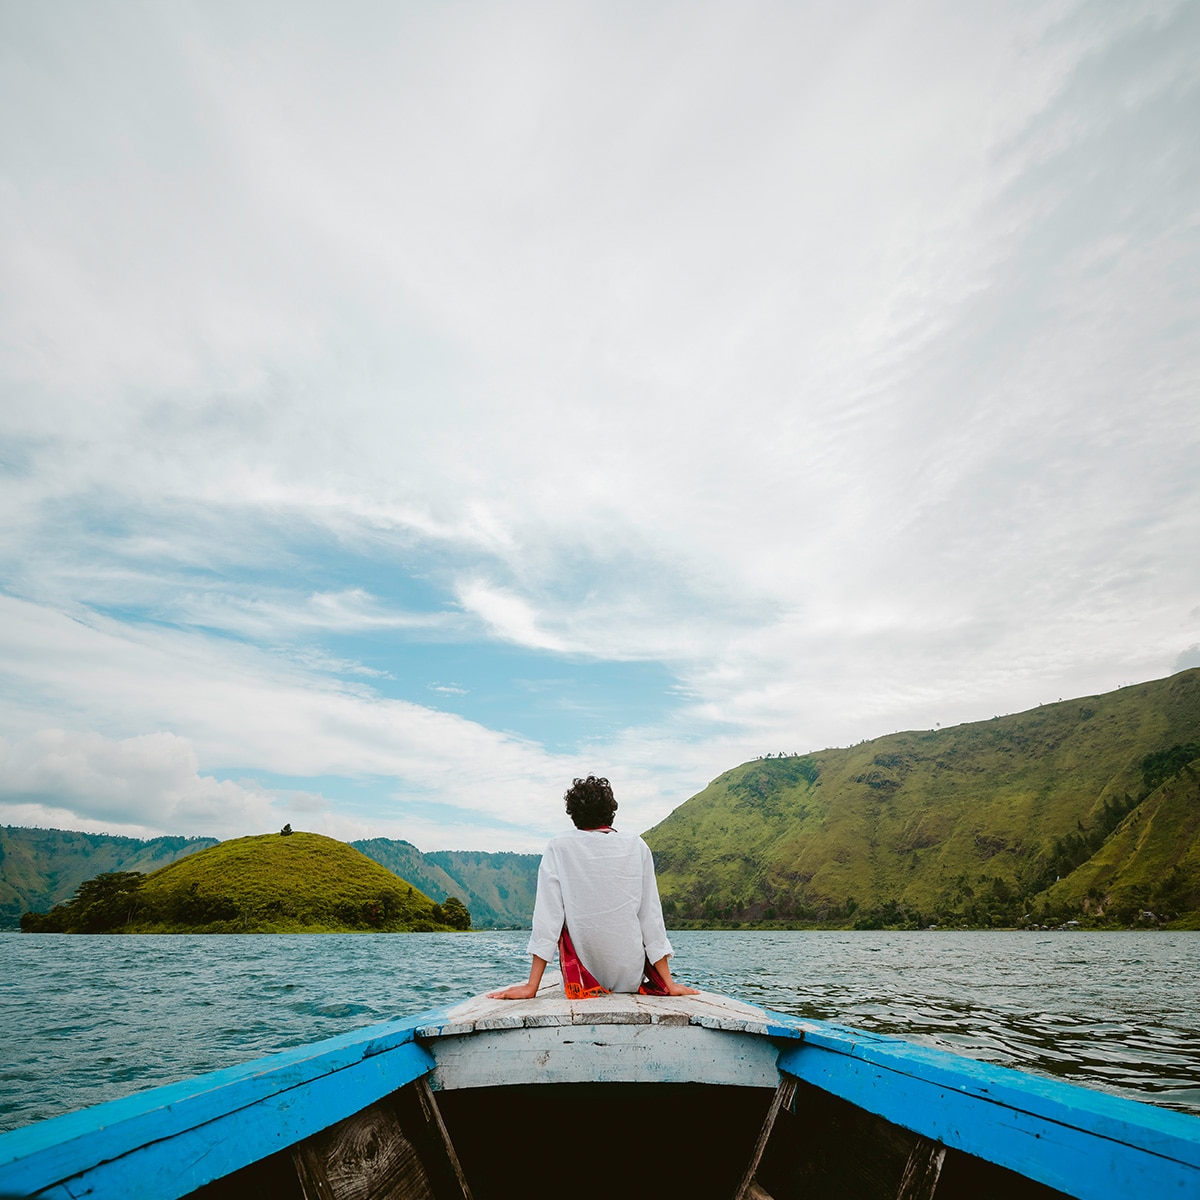 Lake Toba: Spectacular Indonesia Lake Wonder